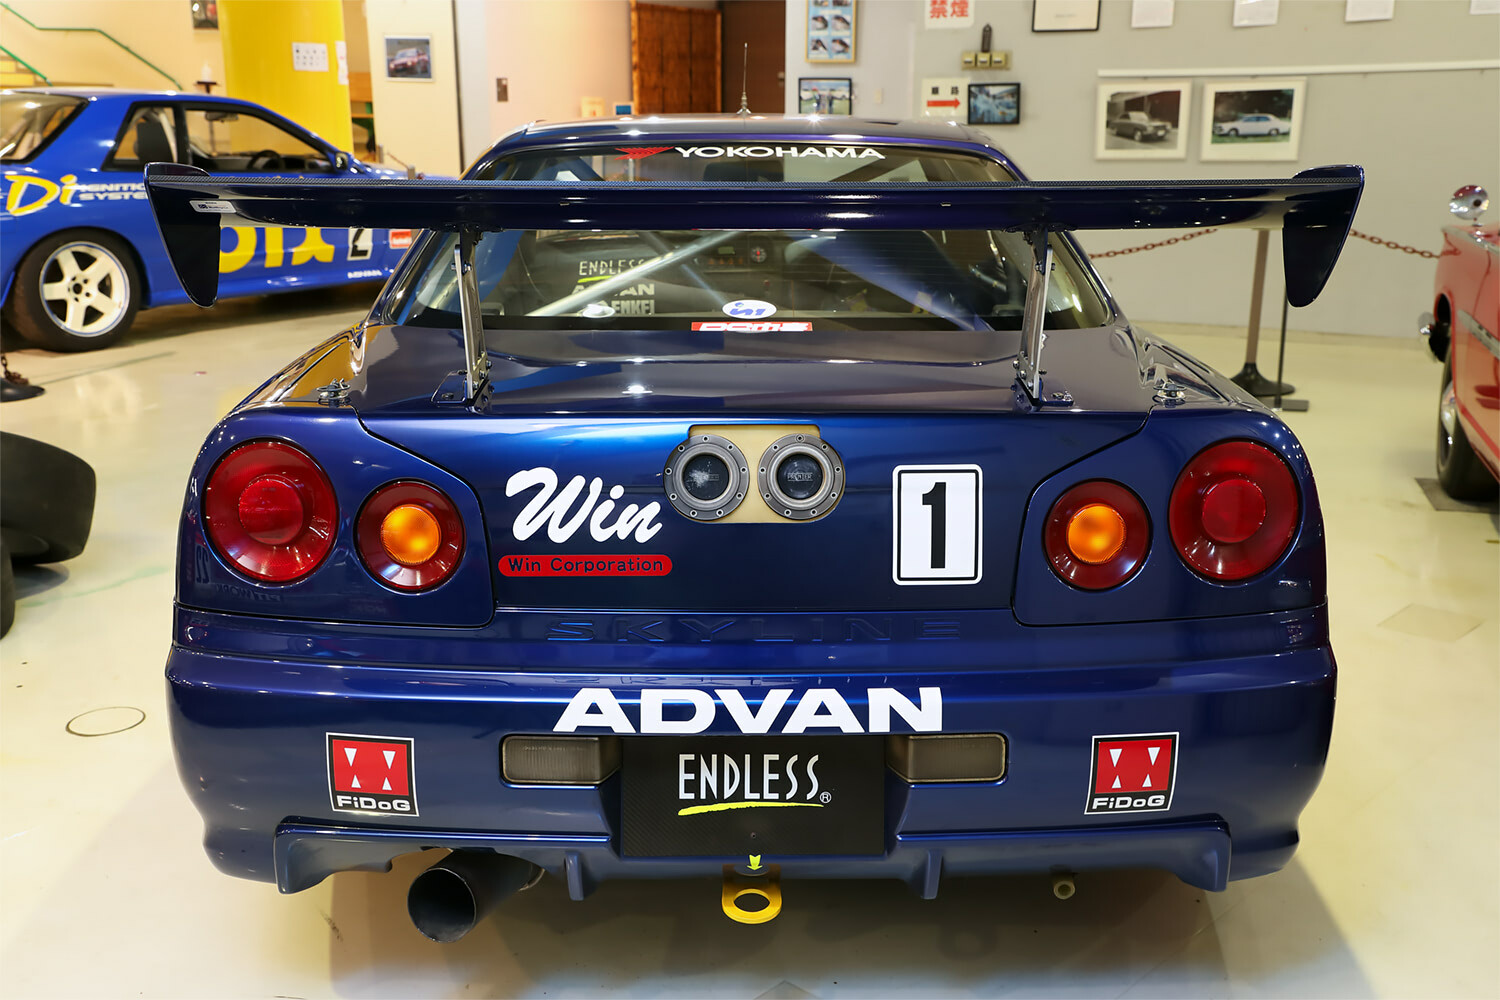 スカイラインGT-Rとして戦った最後の伝説マシン…青いキャリパーが輝く「エンドレス アドバン GT-R」